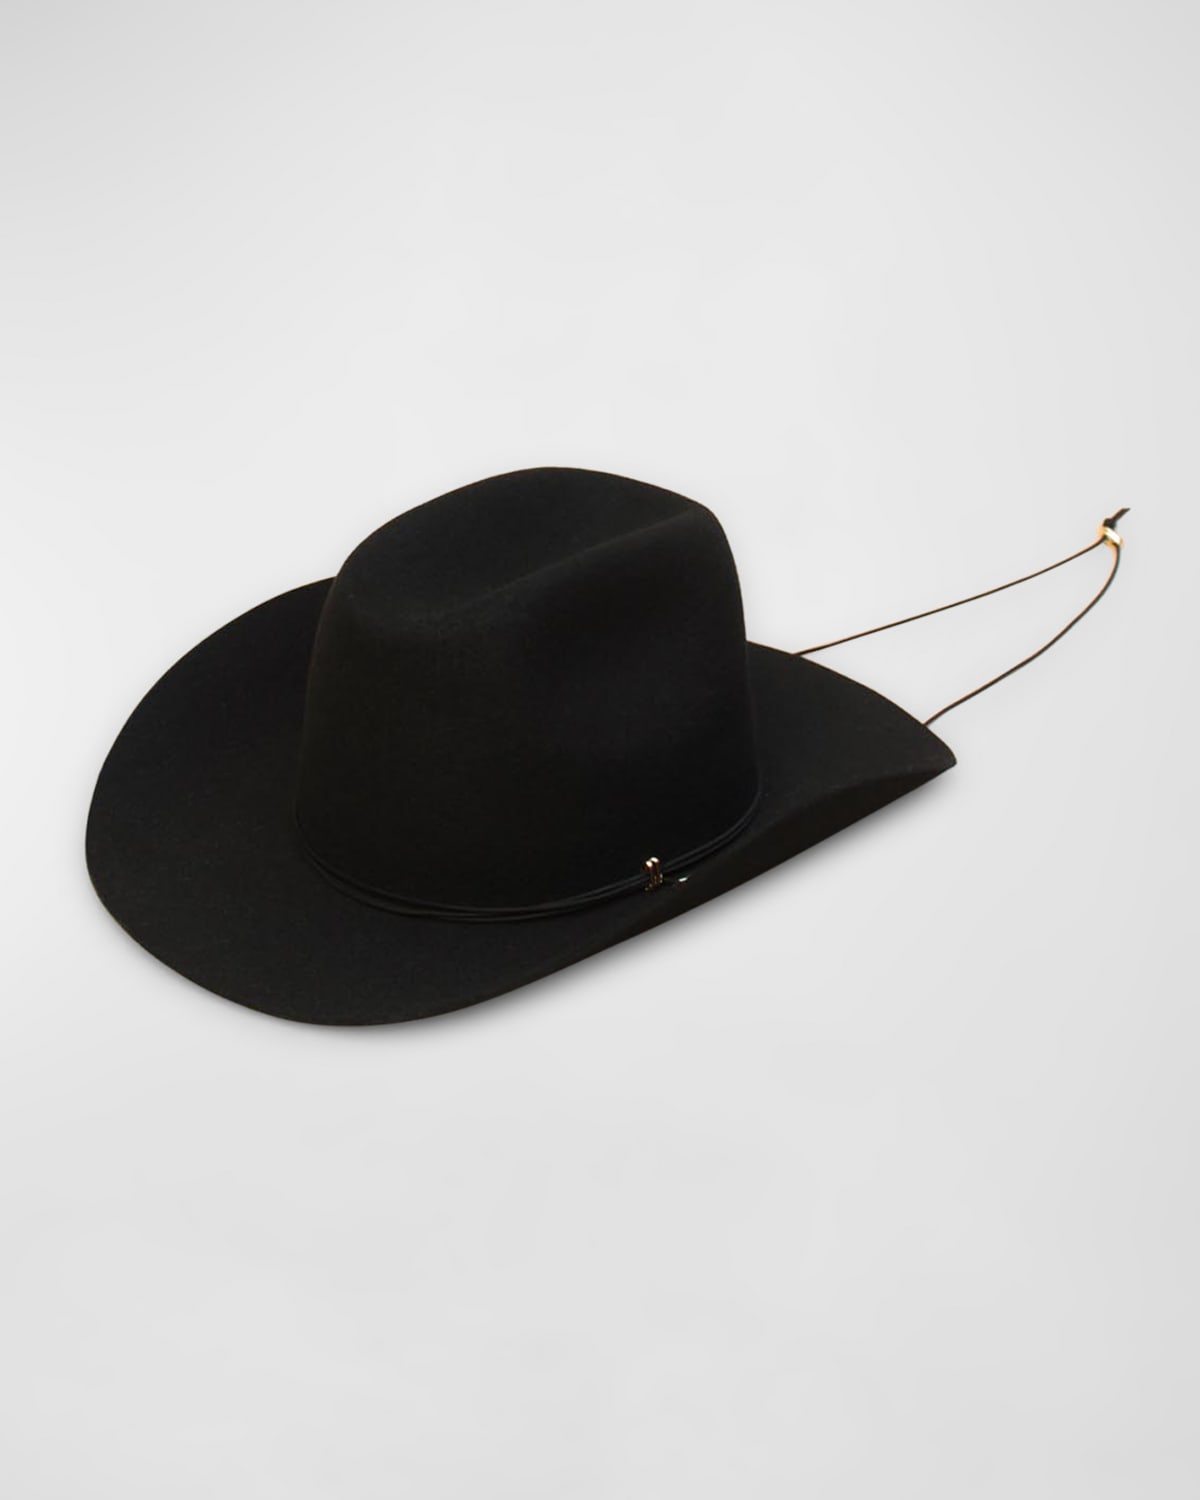 Van Palma Ezra Felt Cowboy Hat With Brass Accents In Black